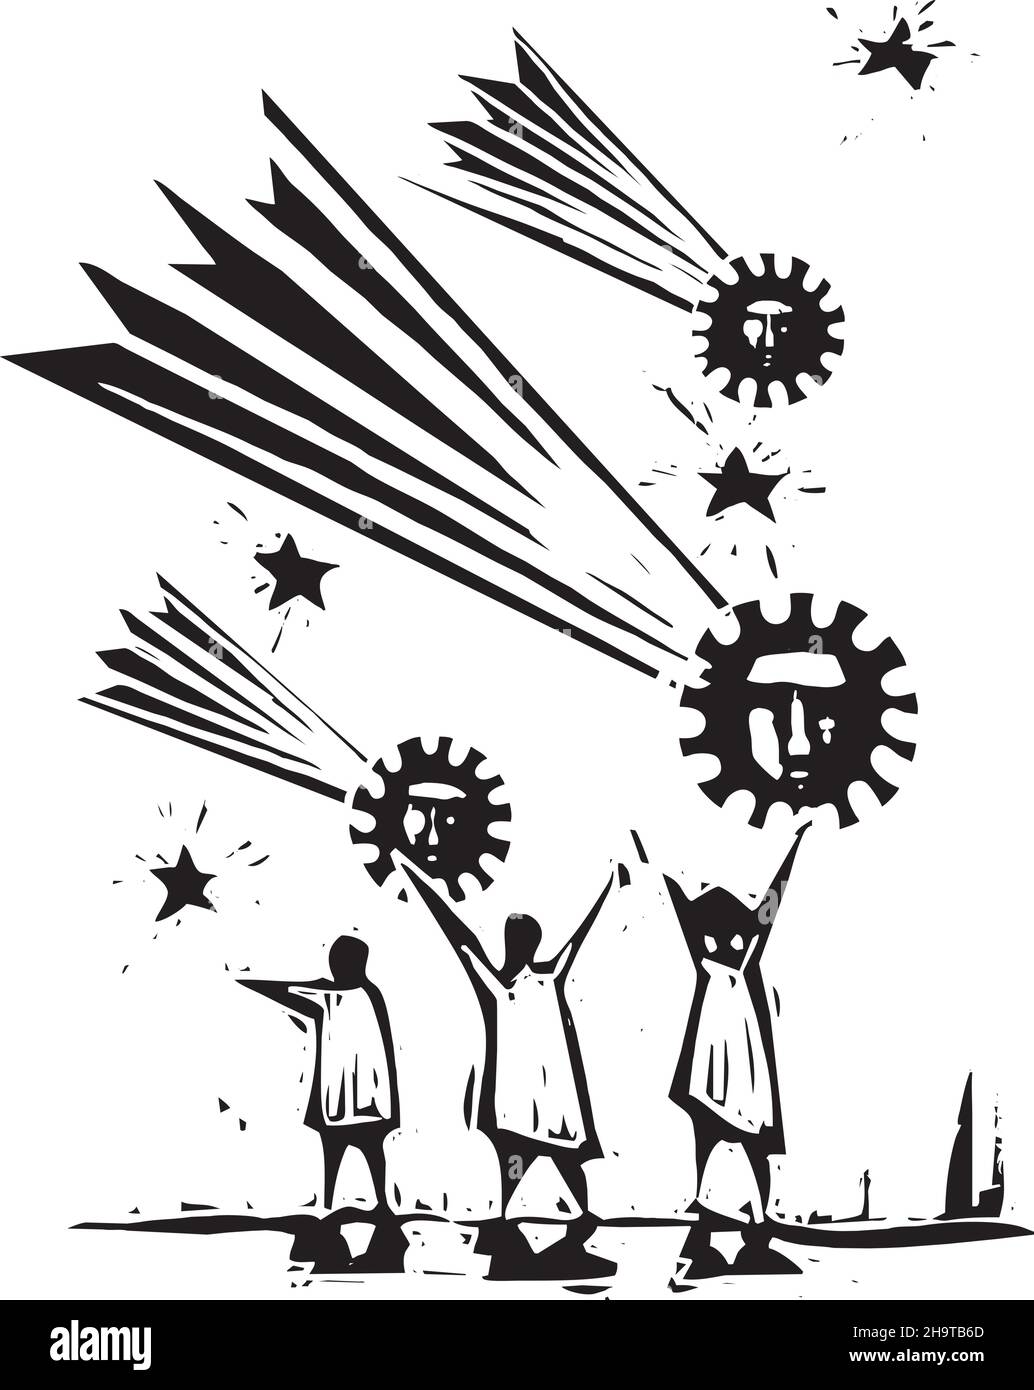 Ilustración de estilo expresionista de corte en madera de personas que observan cometss que parecen esporas pandémicas de covid Ilustración del Vector